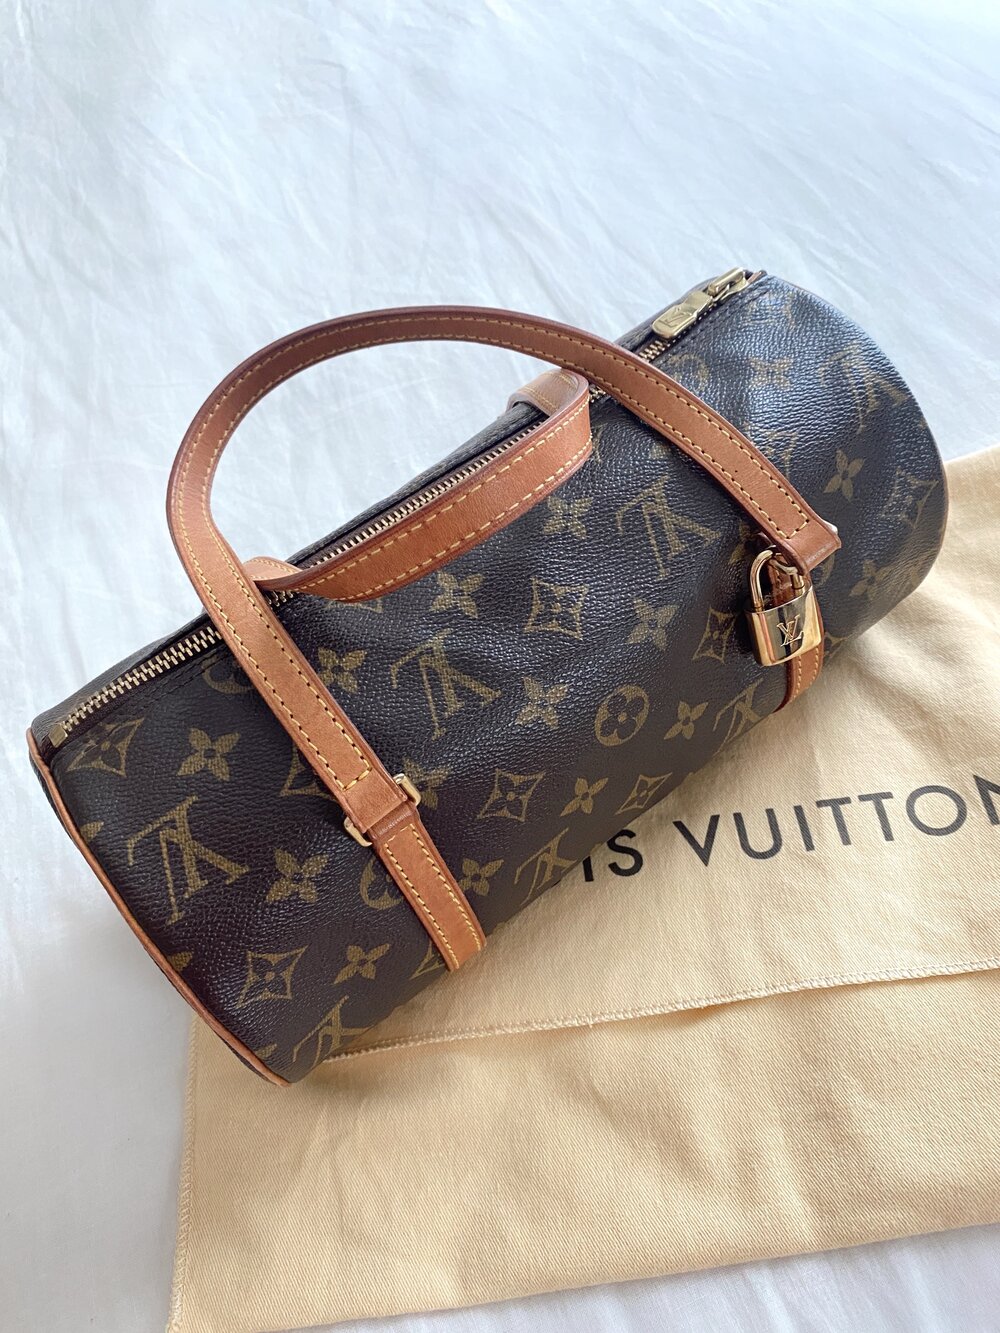 Buy LOUIS VUITTON Monogram Papillon 26 Hand Bag Vintage Authentic Online in  India 